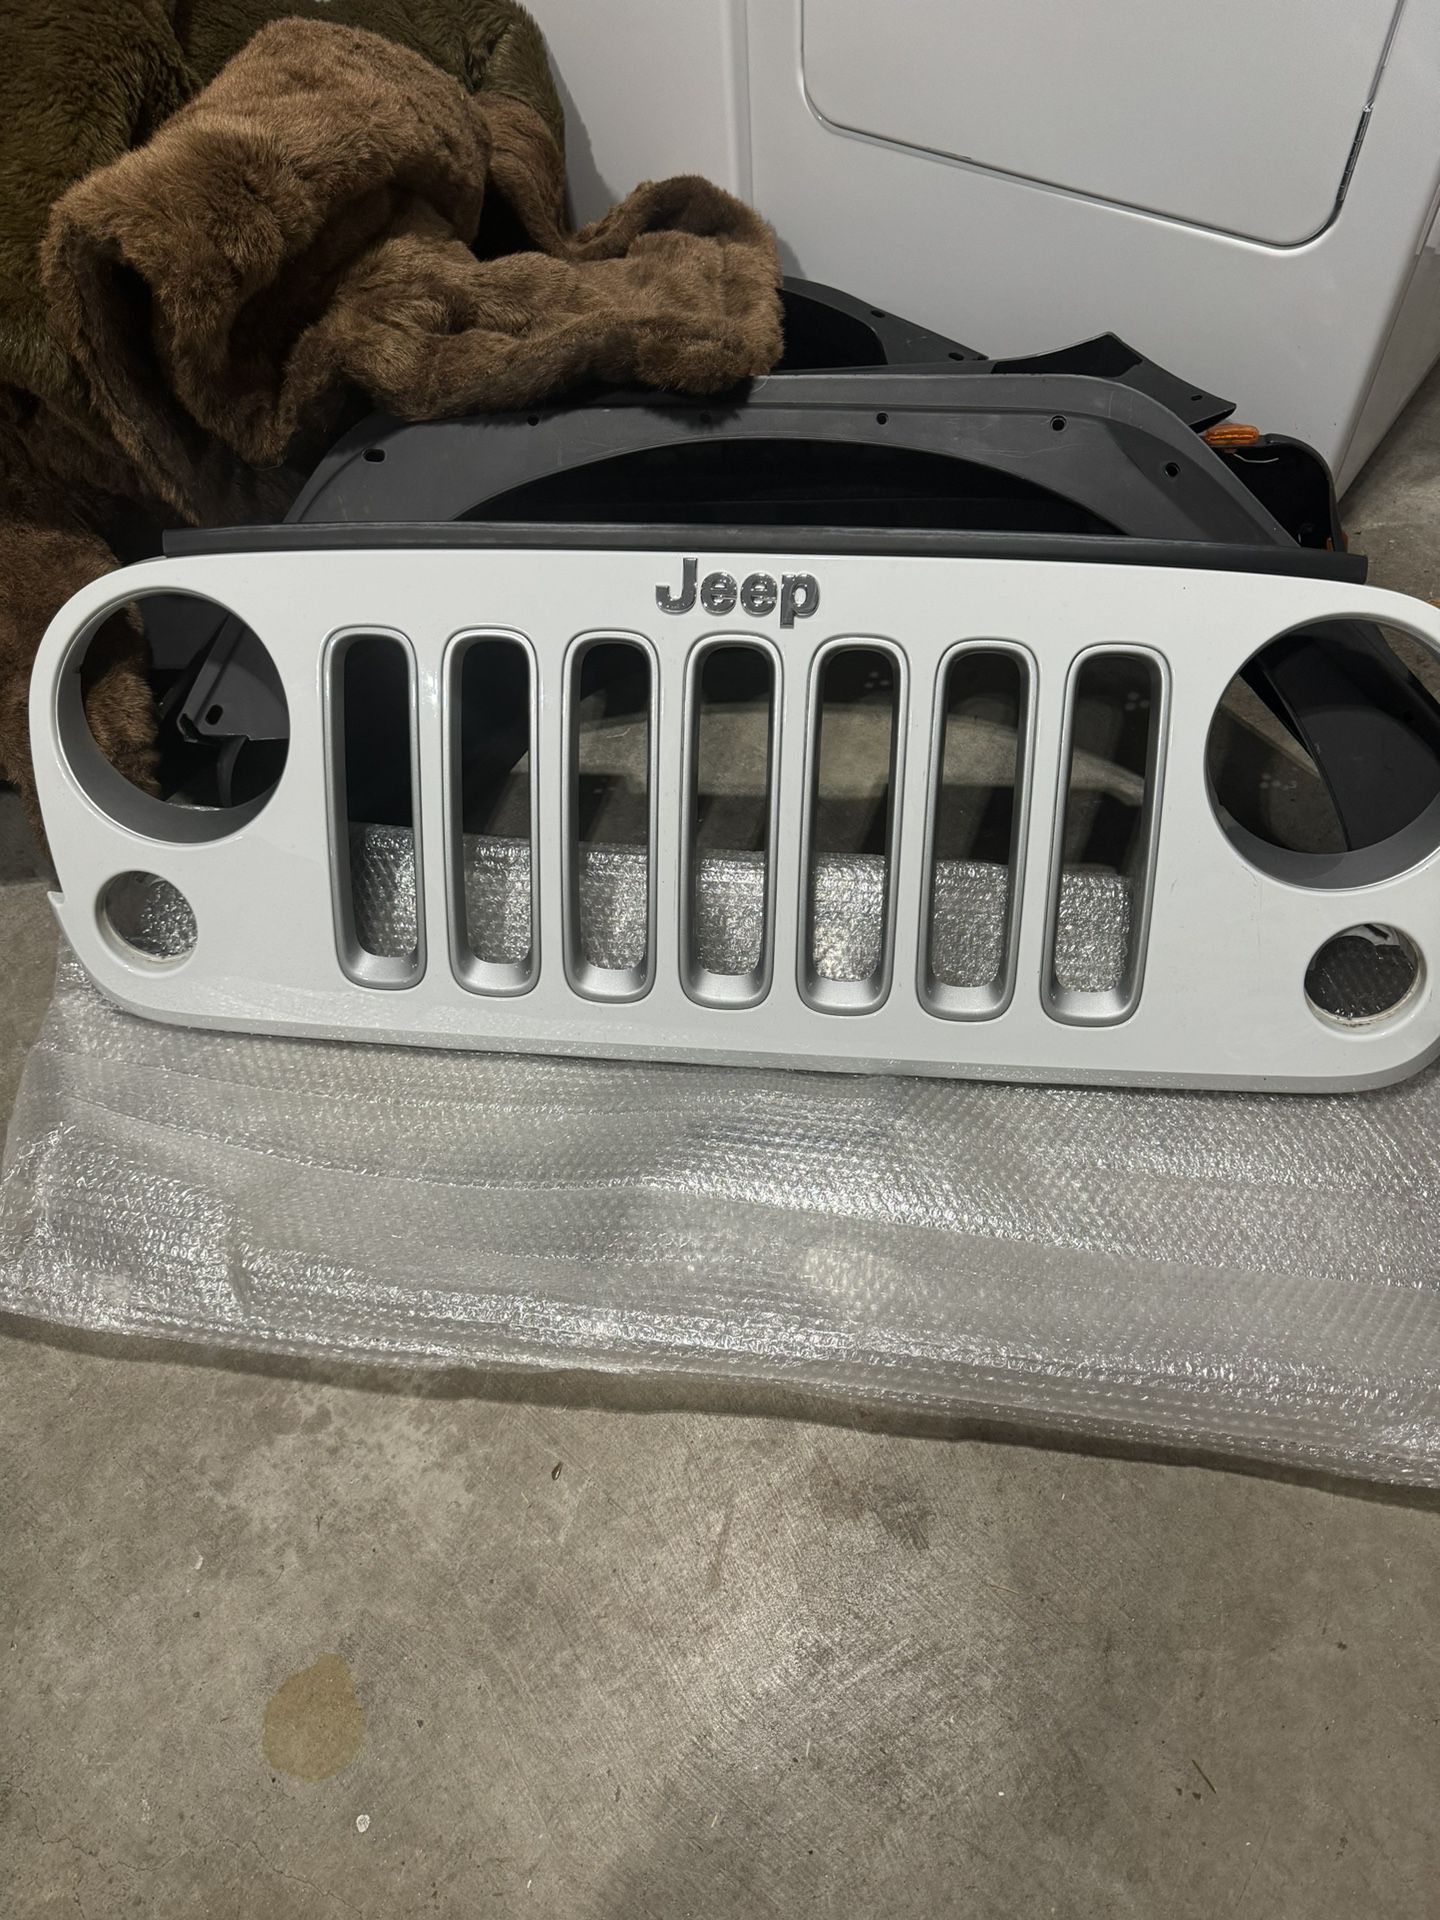 Jeep Wrangler Unlimited 2018 Jk Grille 